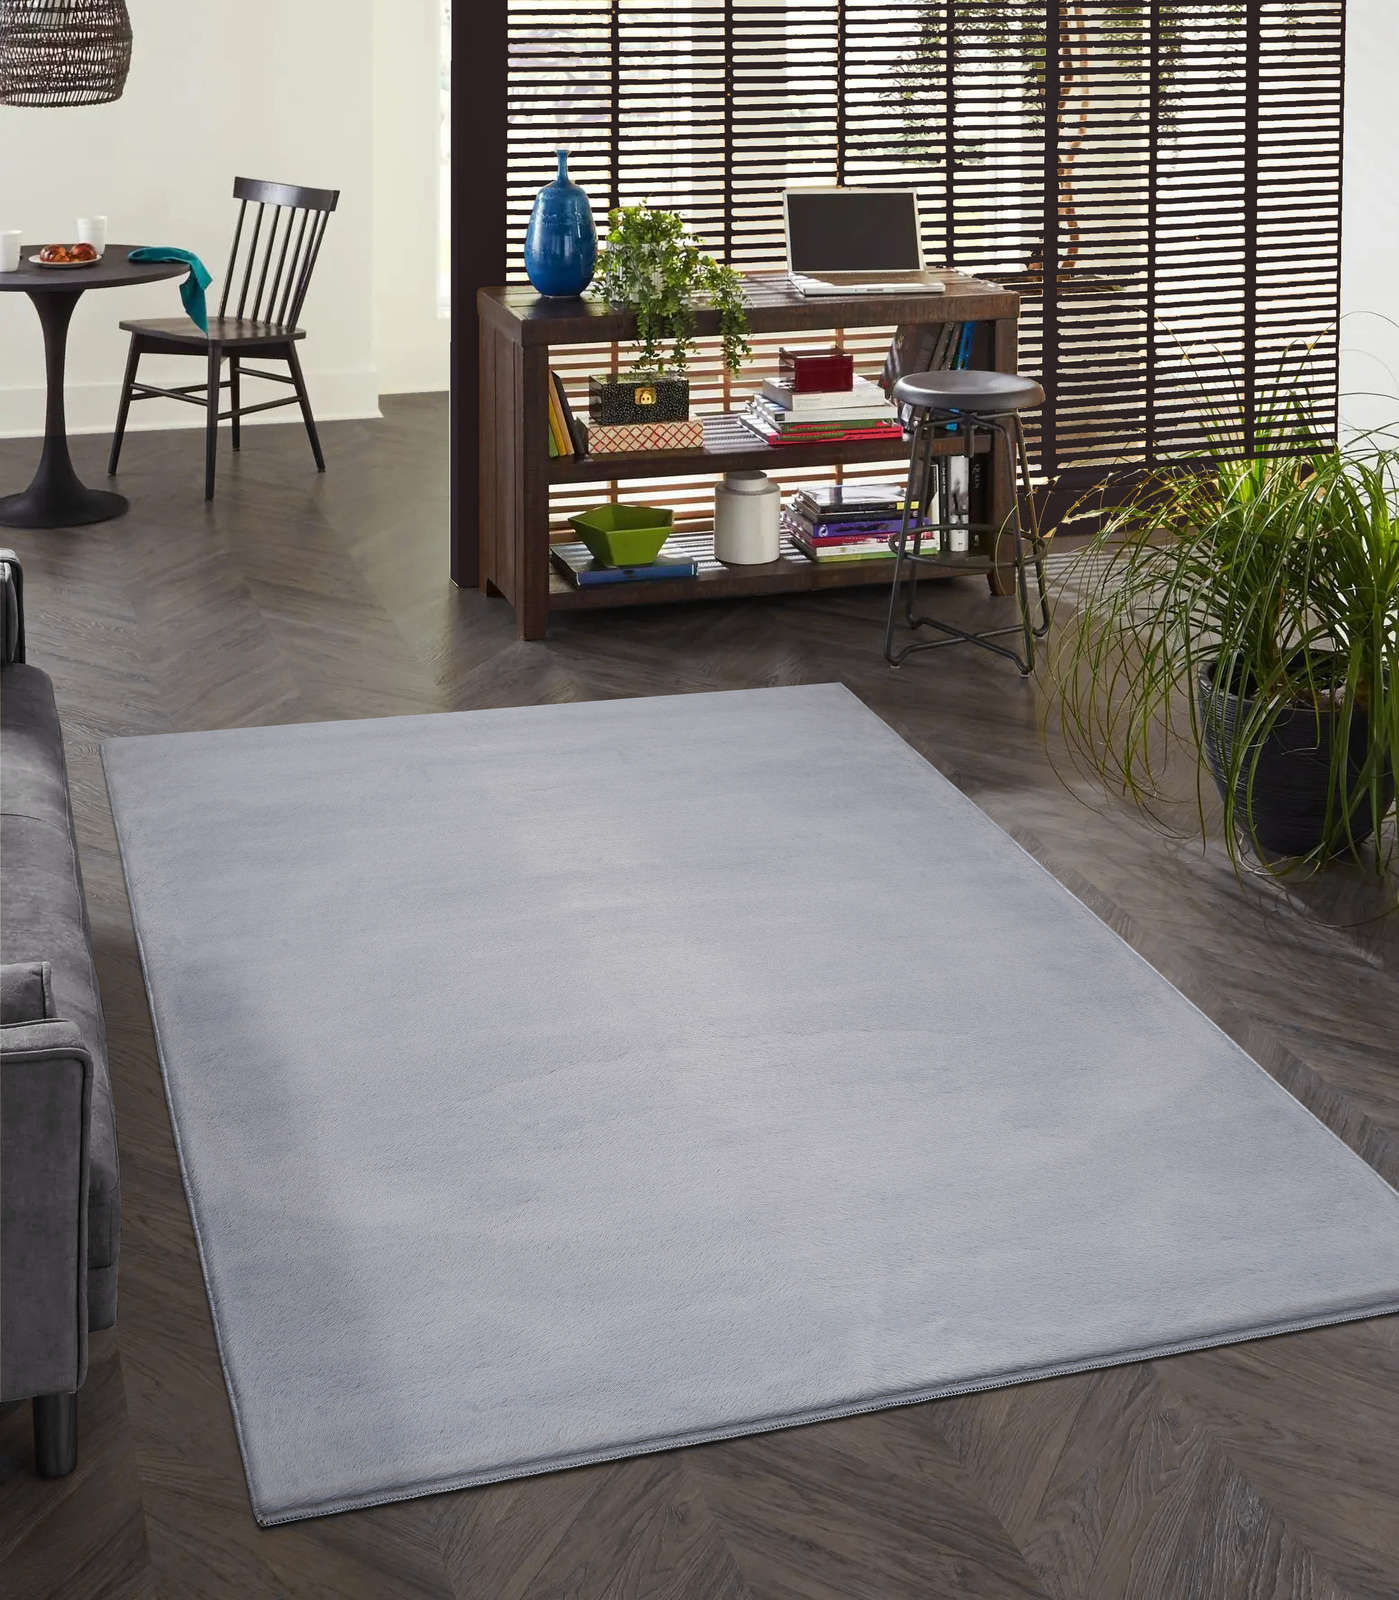             Comfortabel hoogpolig tapijt in zachtgrijs - 220 x 160 cm
        